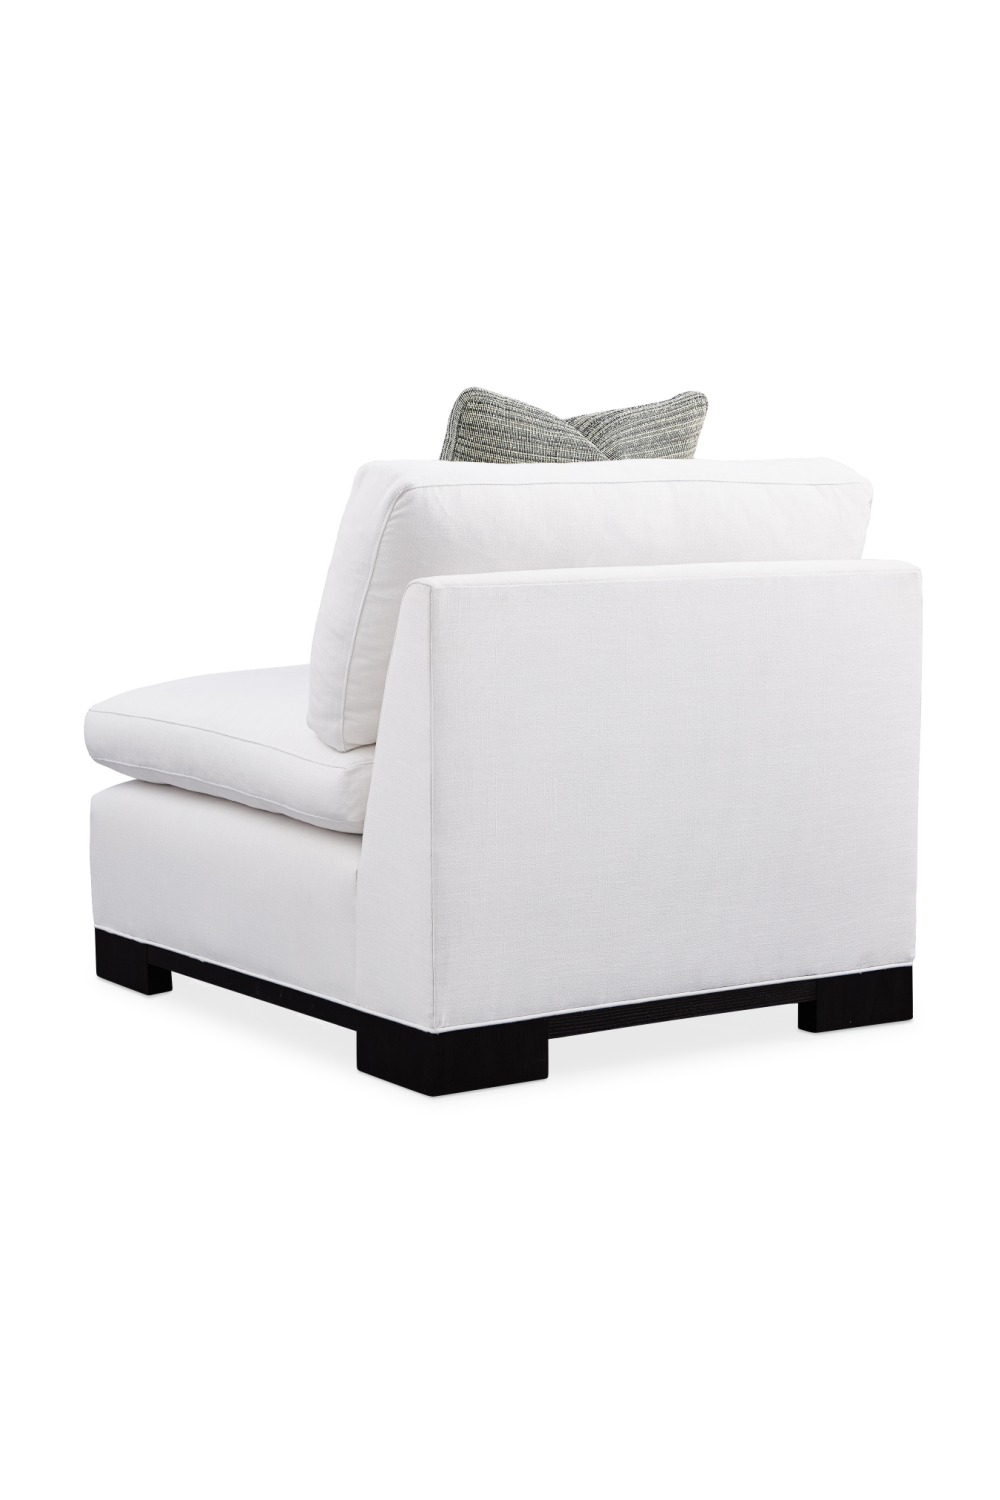 White Modern Modular Sofa | Caracole Refresh